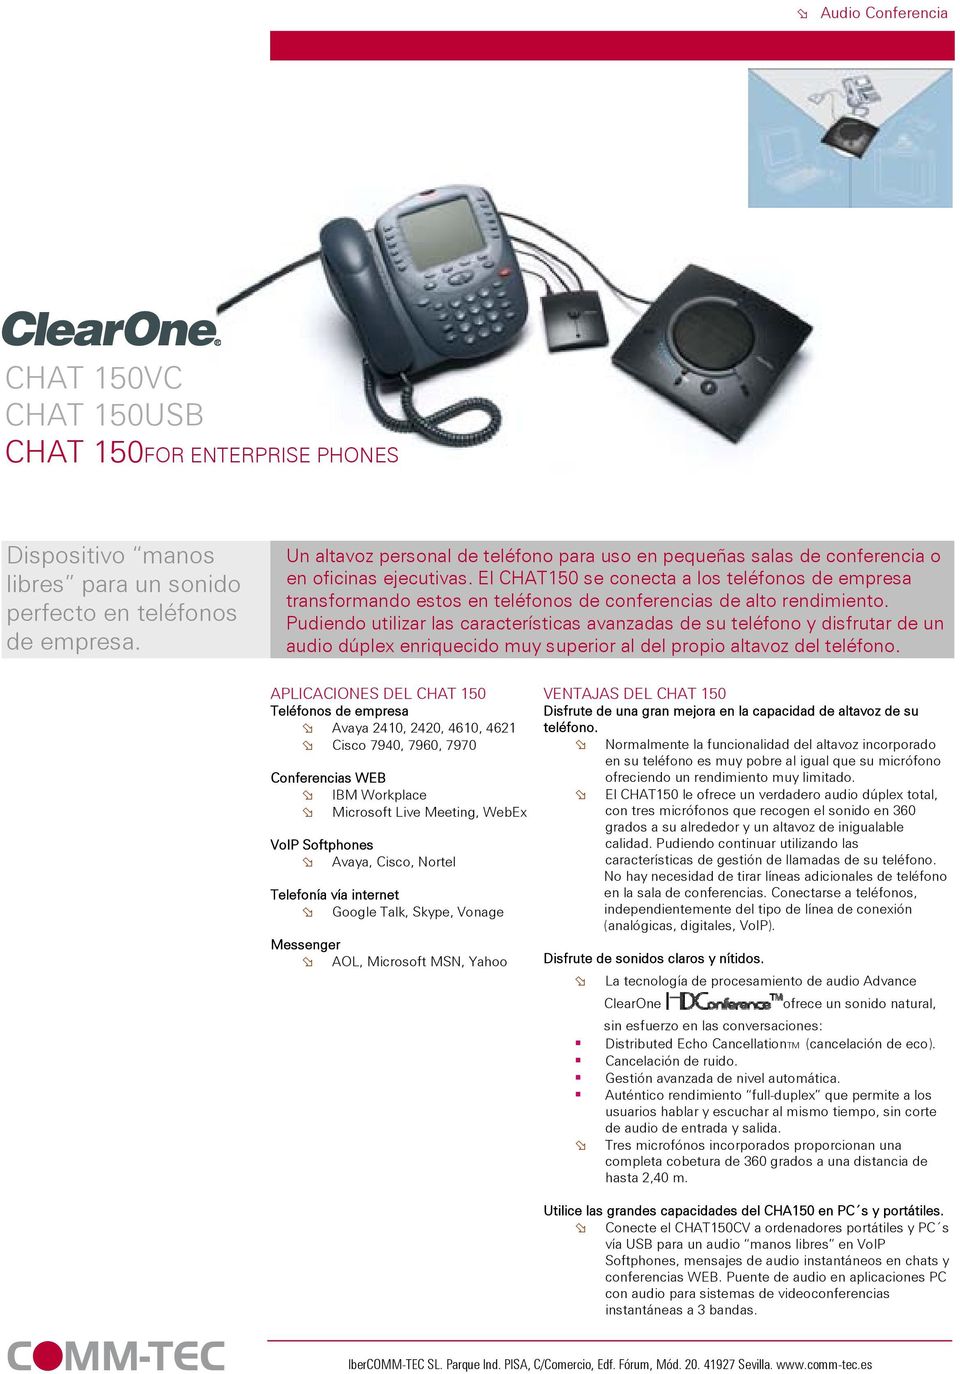 El CHAT150 se conecta a los teléfonos de empresa transformando estos en teléfonos de conferencias de alto rendimiento.